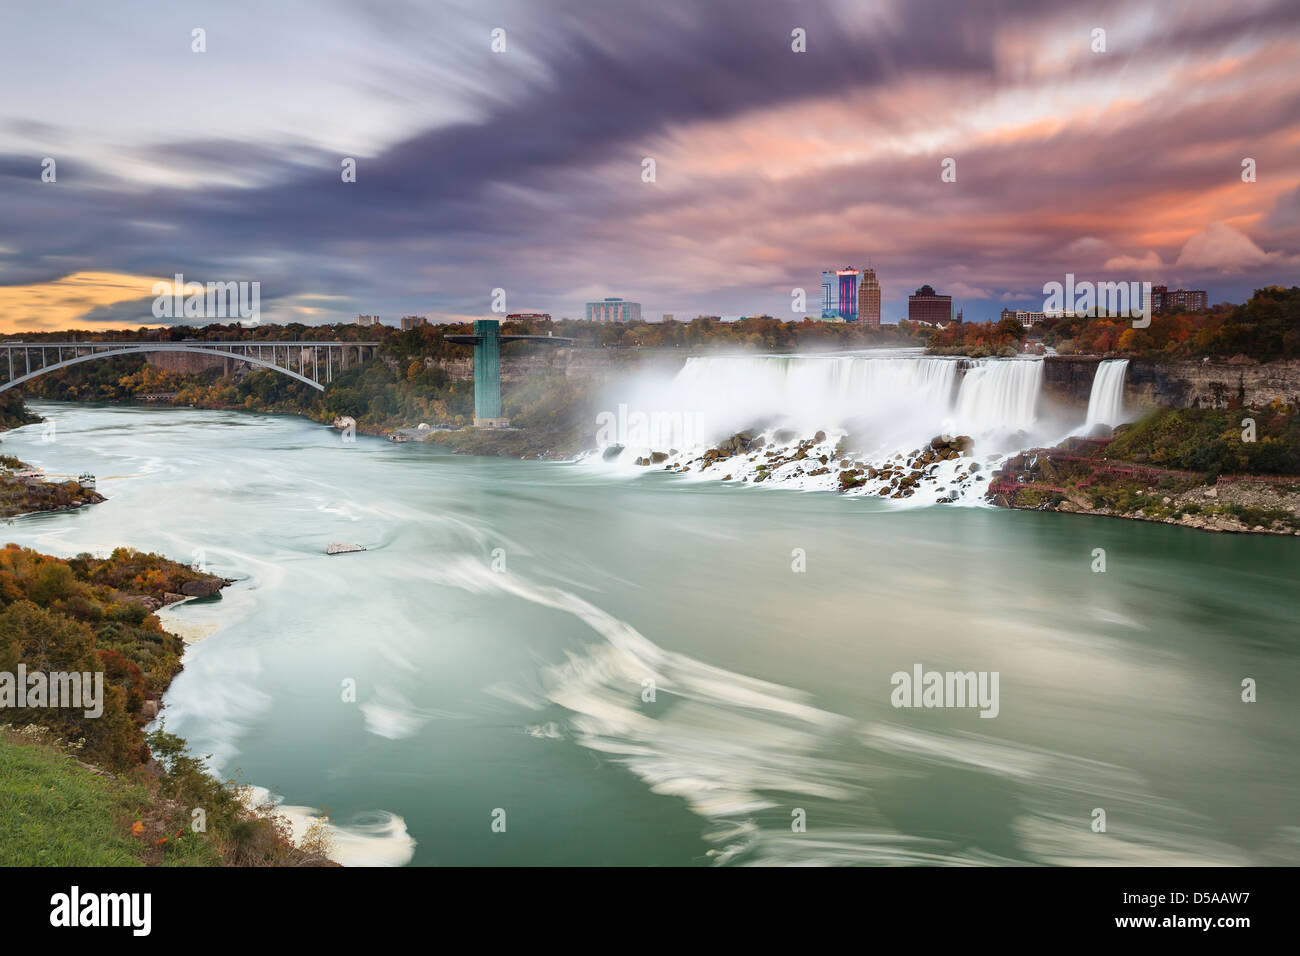 Rivière Niagara avec American Falls et pont en arc-en-ciel, Niagara Falls, New York, USA Banque D'Images